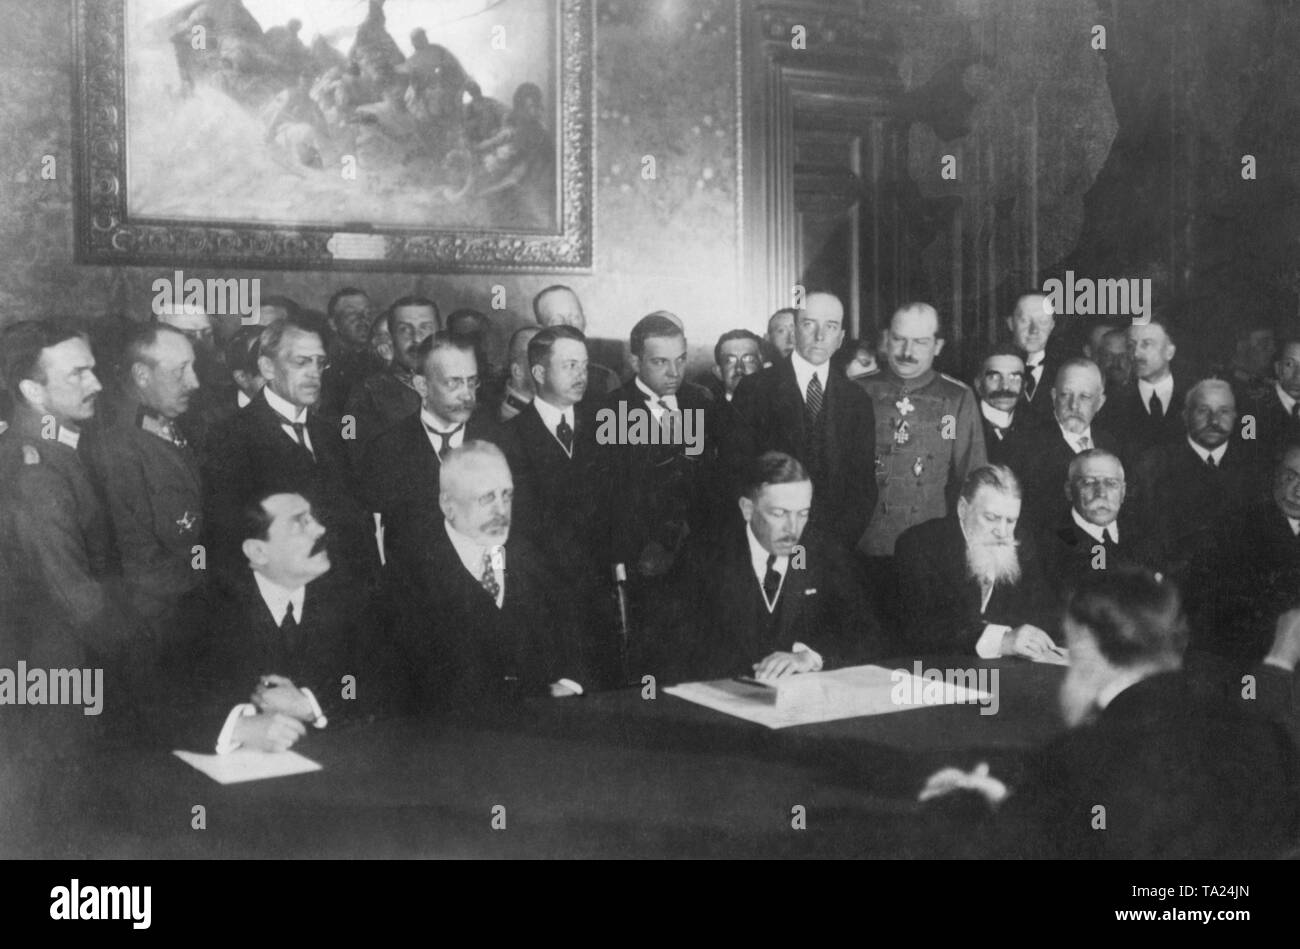 Alexandru Marghiloman, le Premier ministre roumain à la table (2e à partir de la gauche) avec d'autres participants de la réunion avant de signer le traité de paix de Bucarest. Après l'échec de la guerre et l'occupation presque totale de la Roumanie, la paix de Bucarest le 7 mai 1918, a mis fin à la Première Guerre mondiale en Roumanie. Banque D'Images